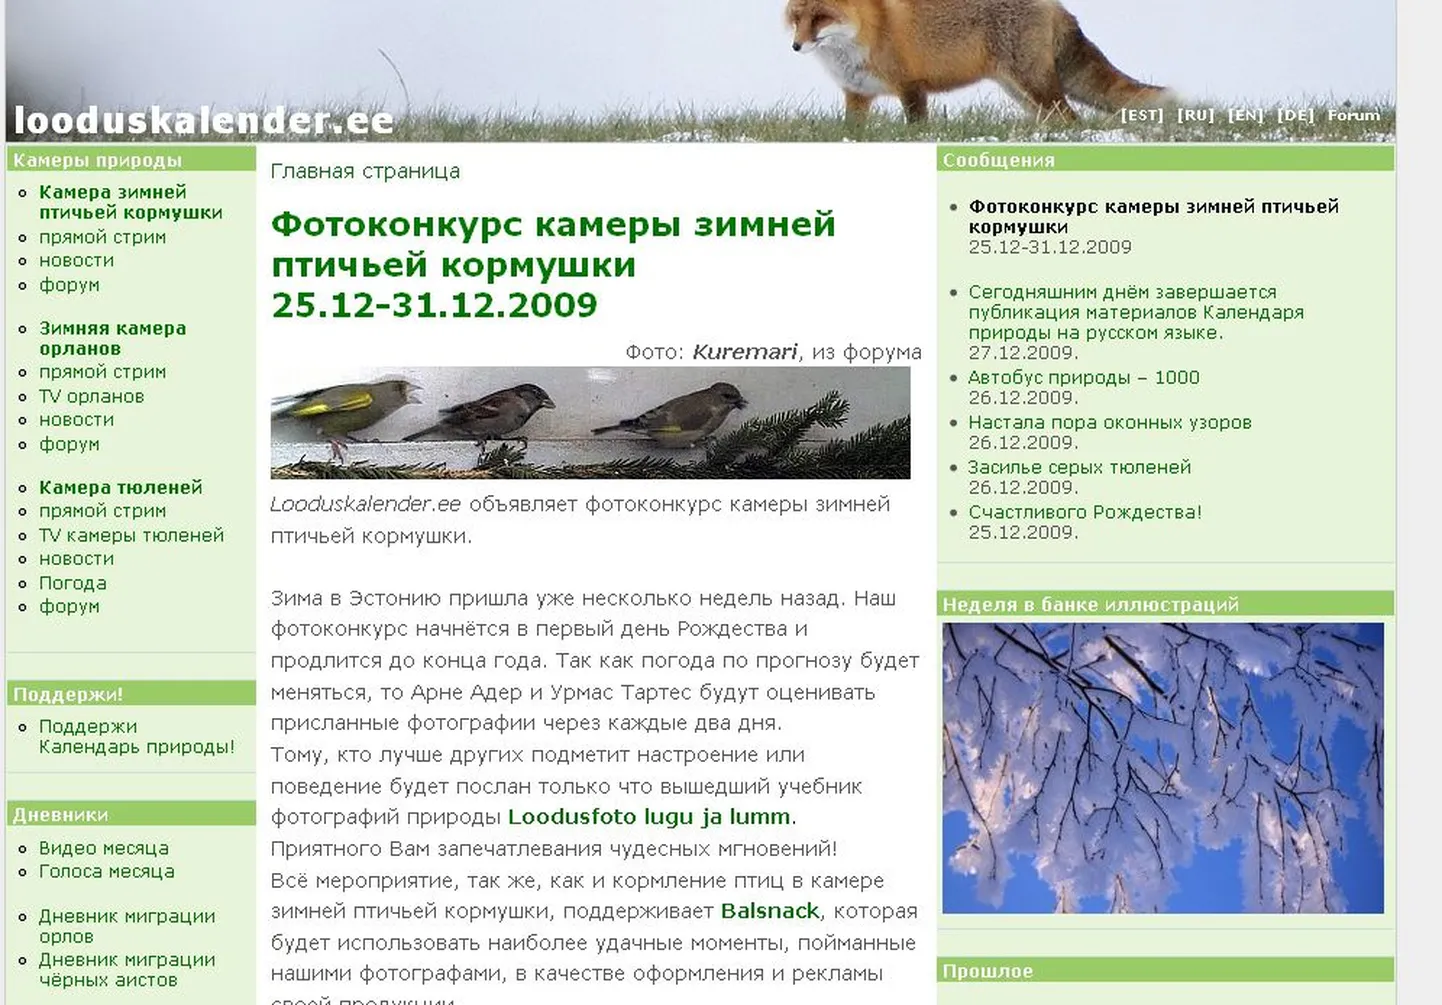 «Календарь природы» на русском языке.